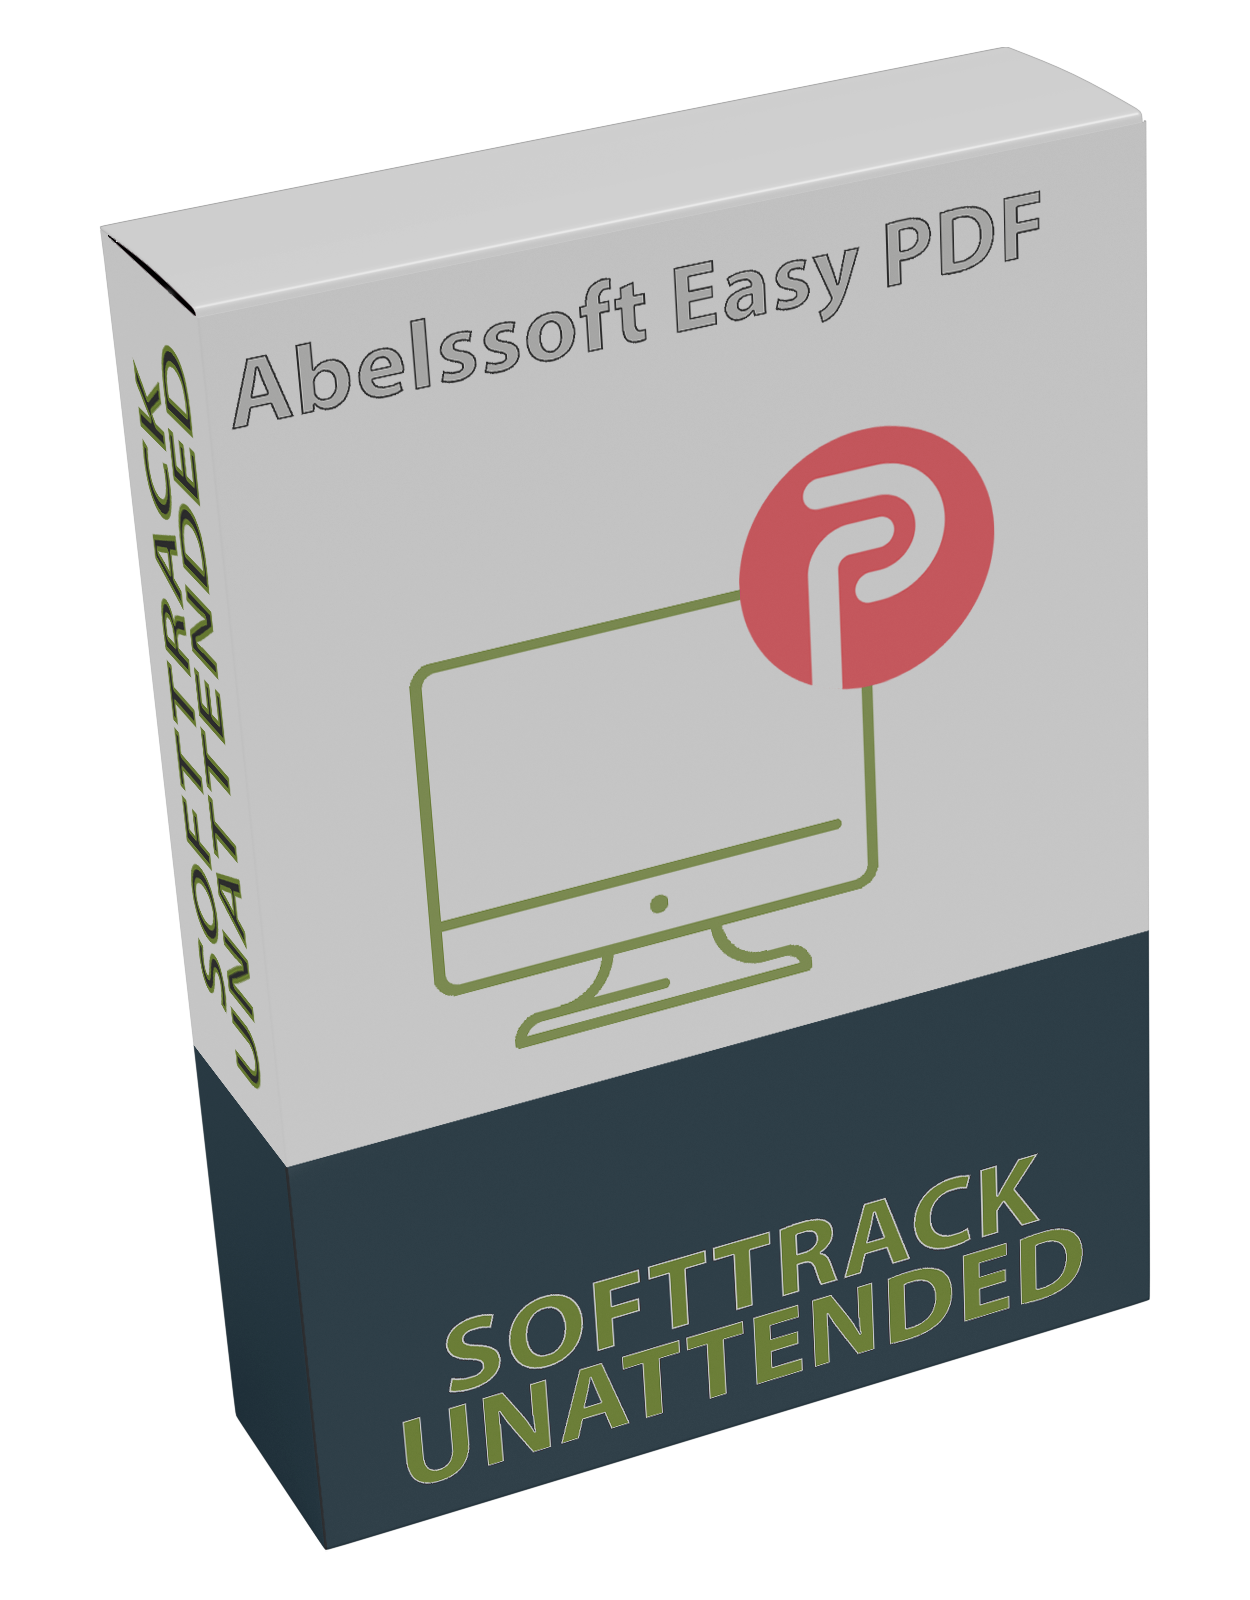 Abelssoft Easy PDF 2022 v3.02.32386 UNATTENDED